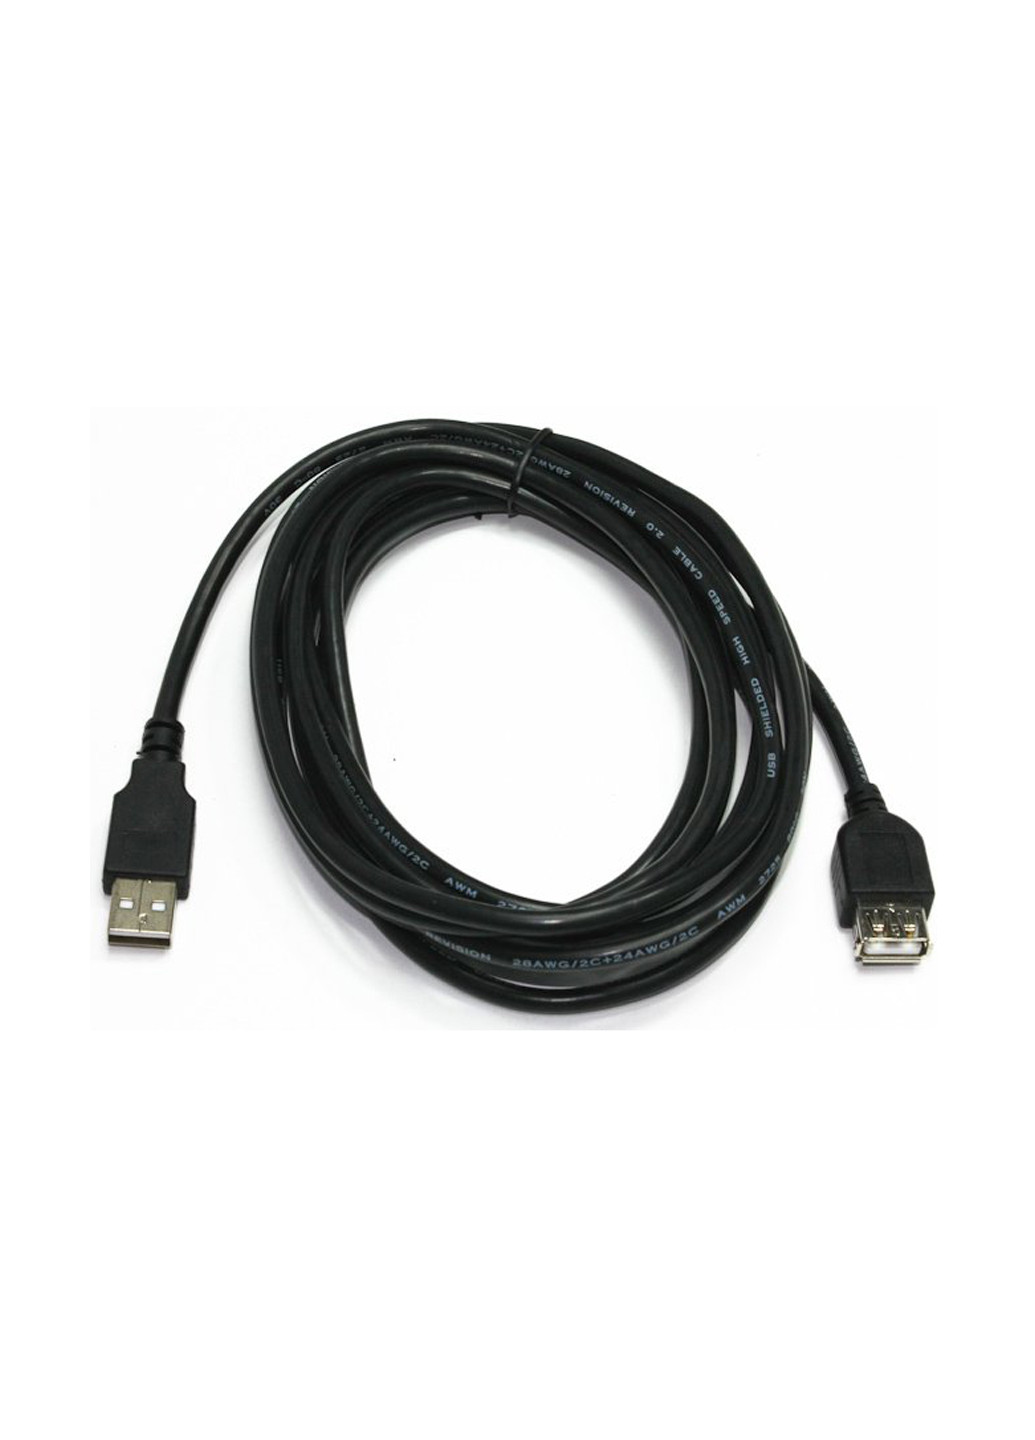 Подовжувач USB2.0, A-папа / F-мама, 3 м, преміум (CCP-USB2-AMAF-10) Cablexpert удлинитель usb2.0, a-папа/f-мама, 3 м, премиум (ccp-usb2-amaf-10) (137703616)